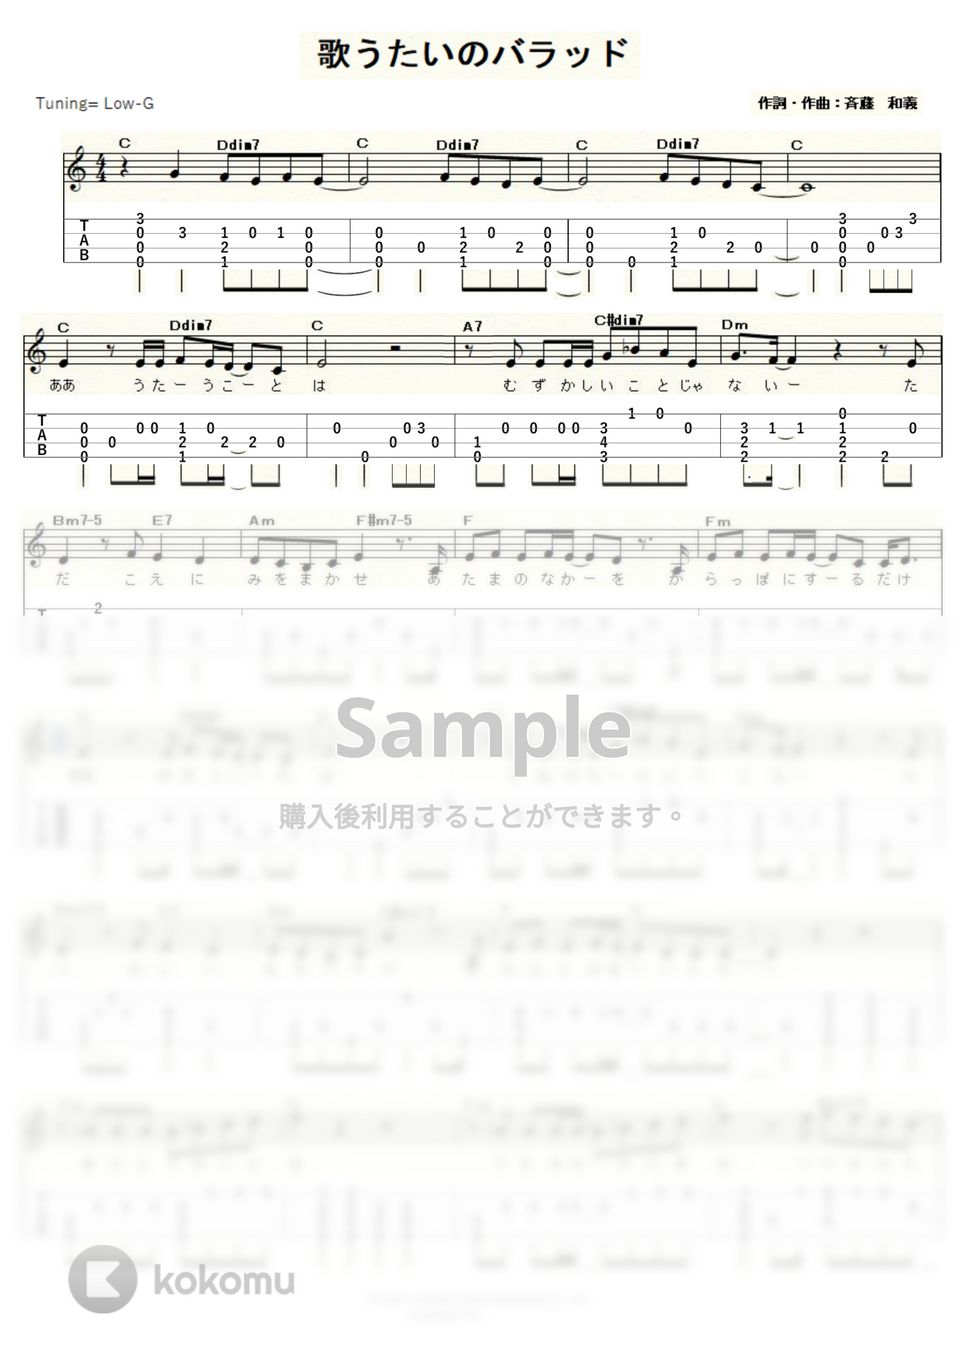 斉藤和義 - 歌うたいのバラッド (ｳｸﾚﾚｿﾛ/Low-G/中級～上級) by ukulelepapa